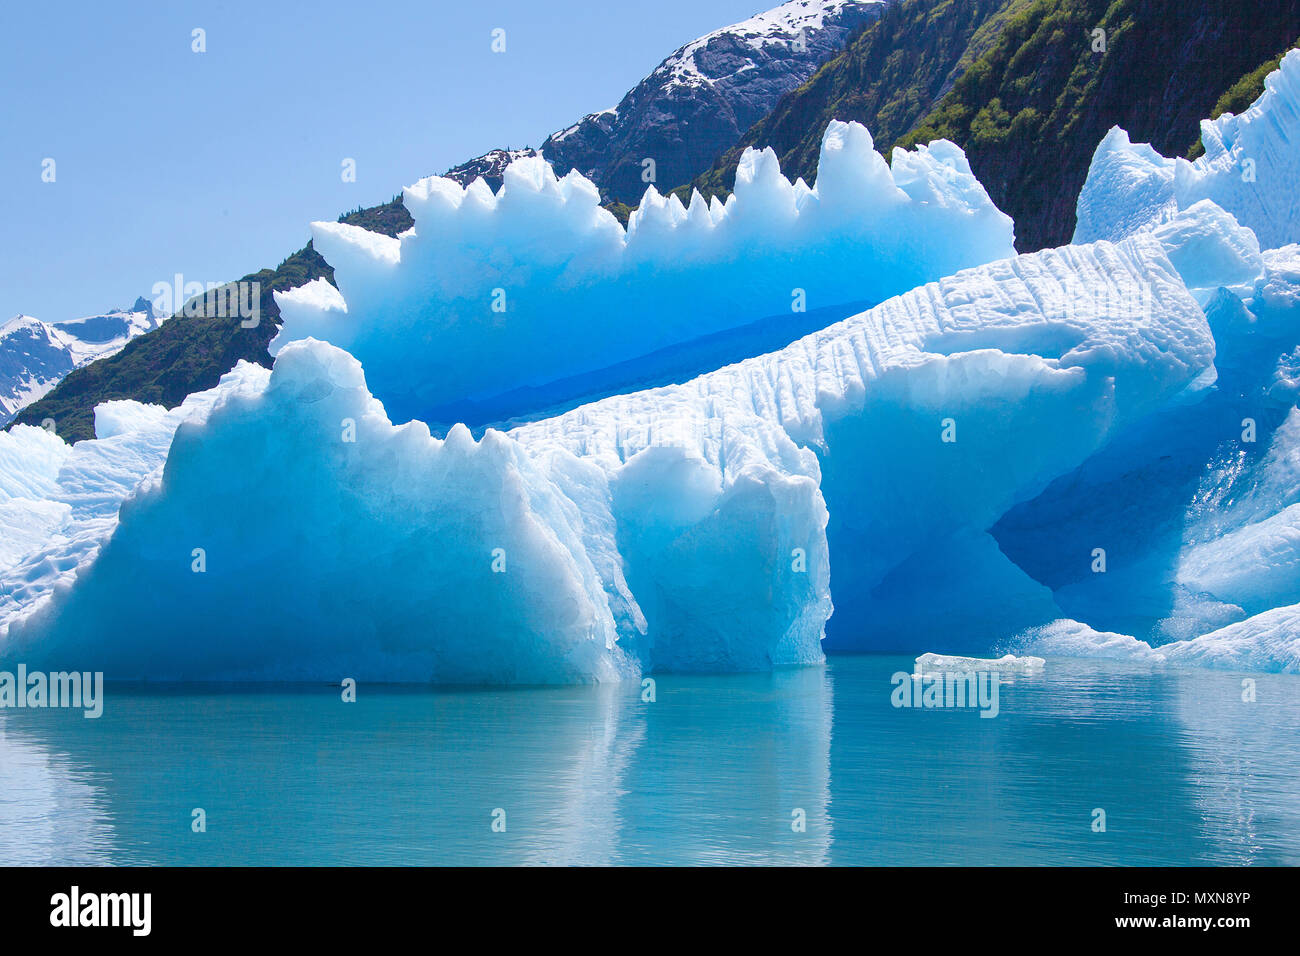 Fusione del ghiaccio a Sawyer glacier, Tracy Arm Fjord, Alaska, Pacifico del Nord, STATI UNITI D'AMERICA Foto Stock